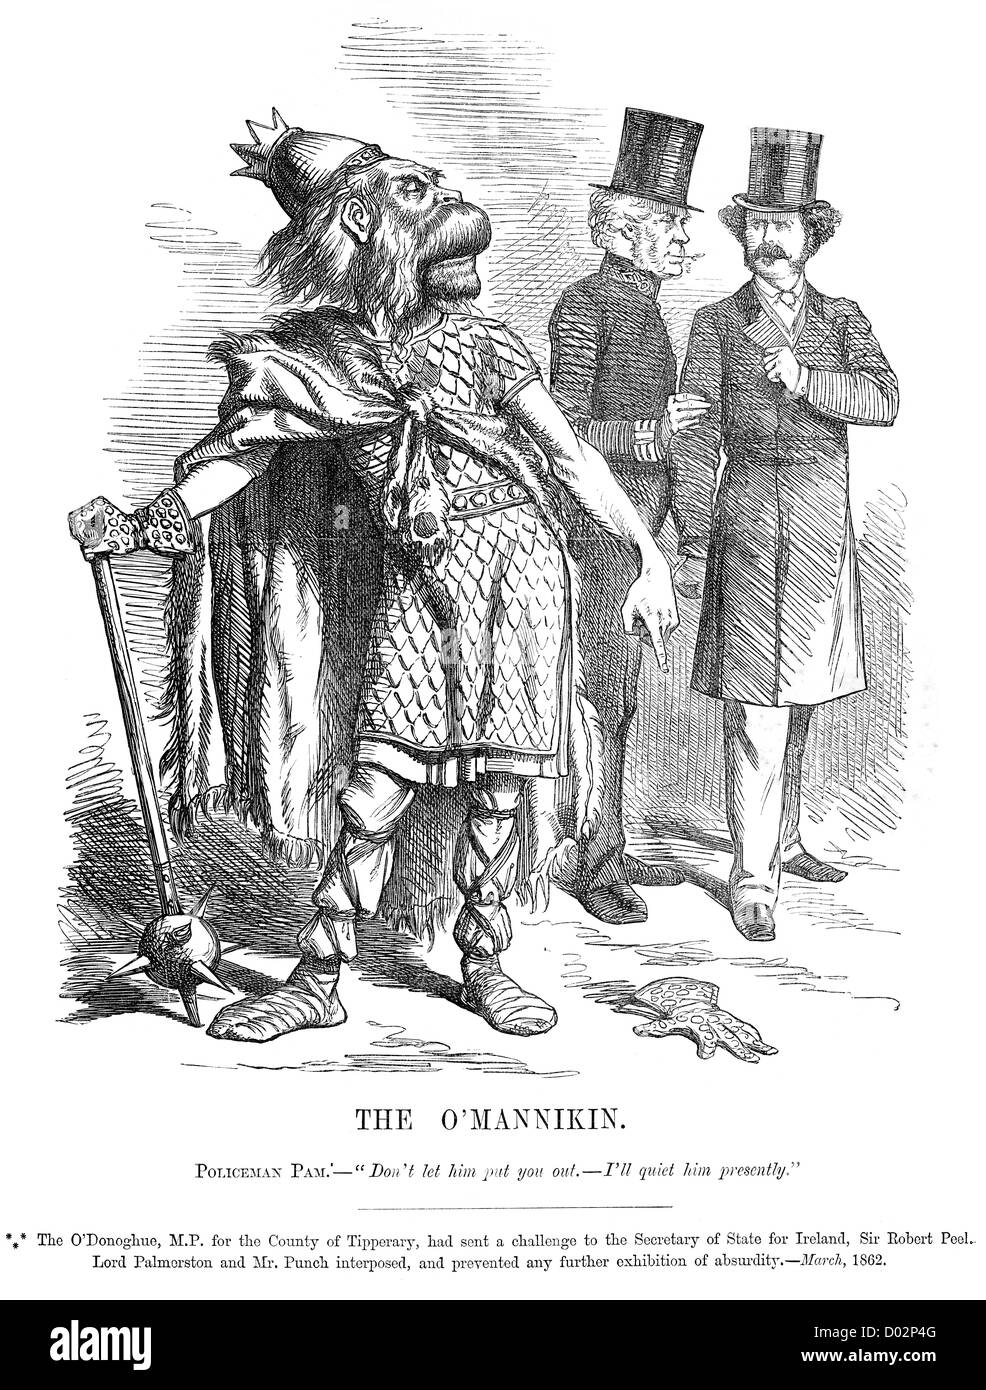 L'O'Mannikin. Cartoon politico circa O'Donoghue MP per Tipperary impegnativo Sir Robert Peel, marzo 1862. Foto Stock